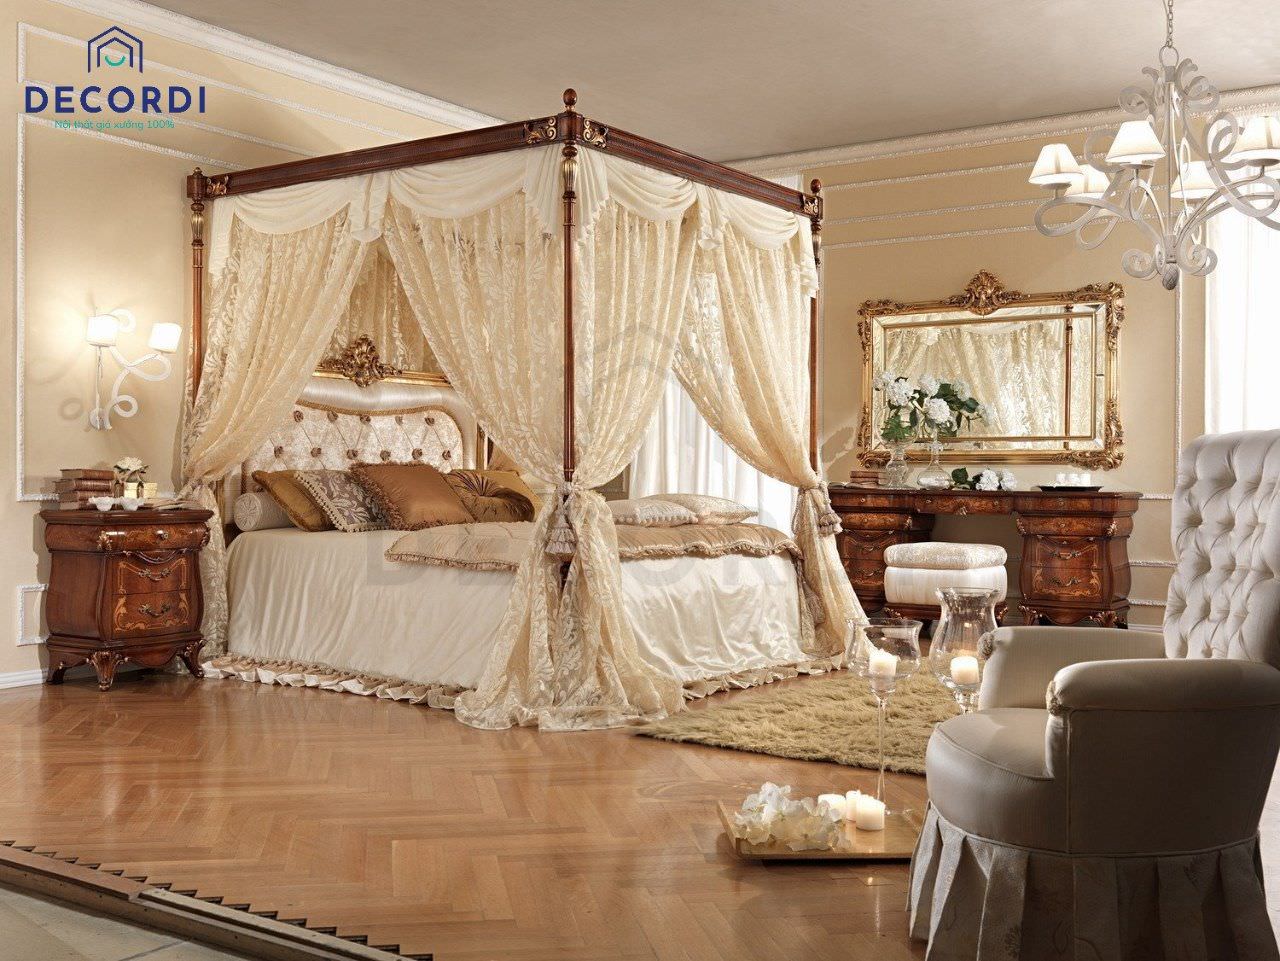 Thiết kế phòng ngủ lãng mạn theo phong cách vintage